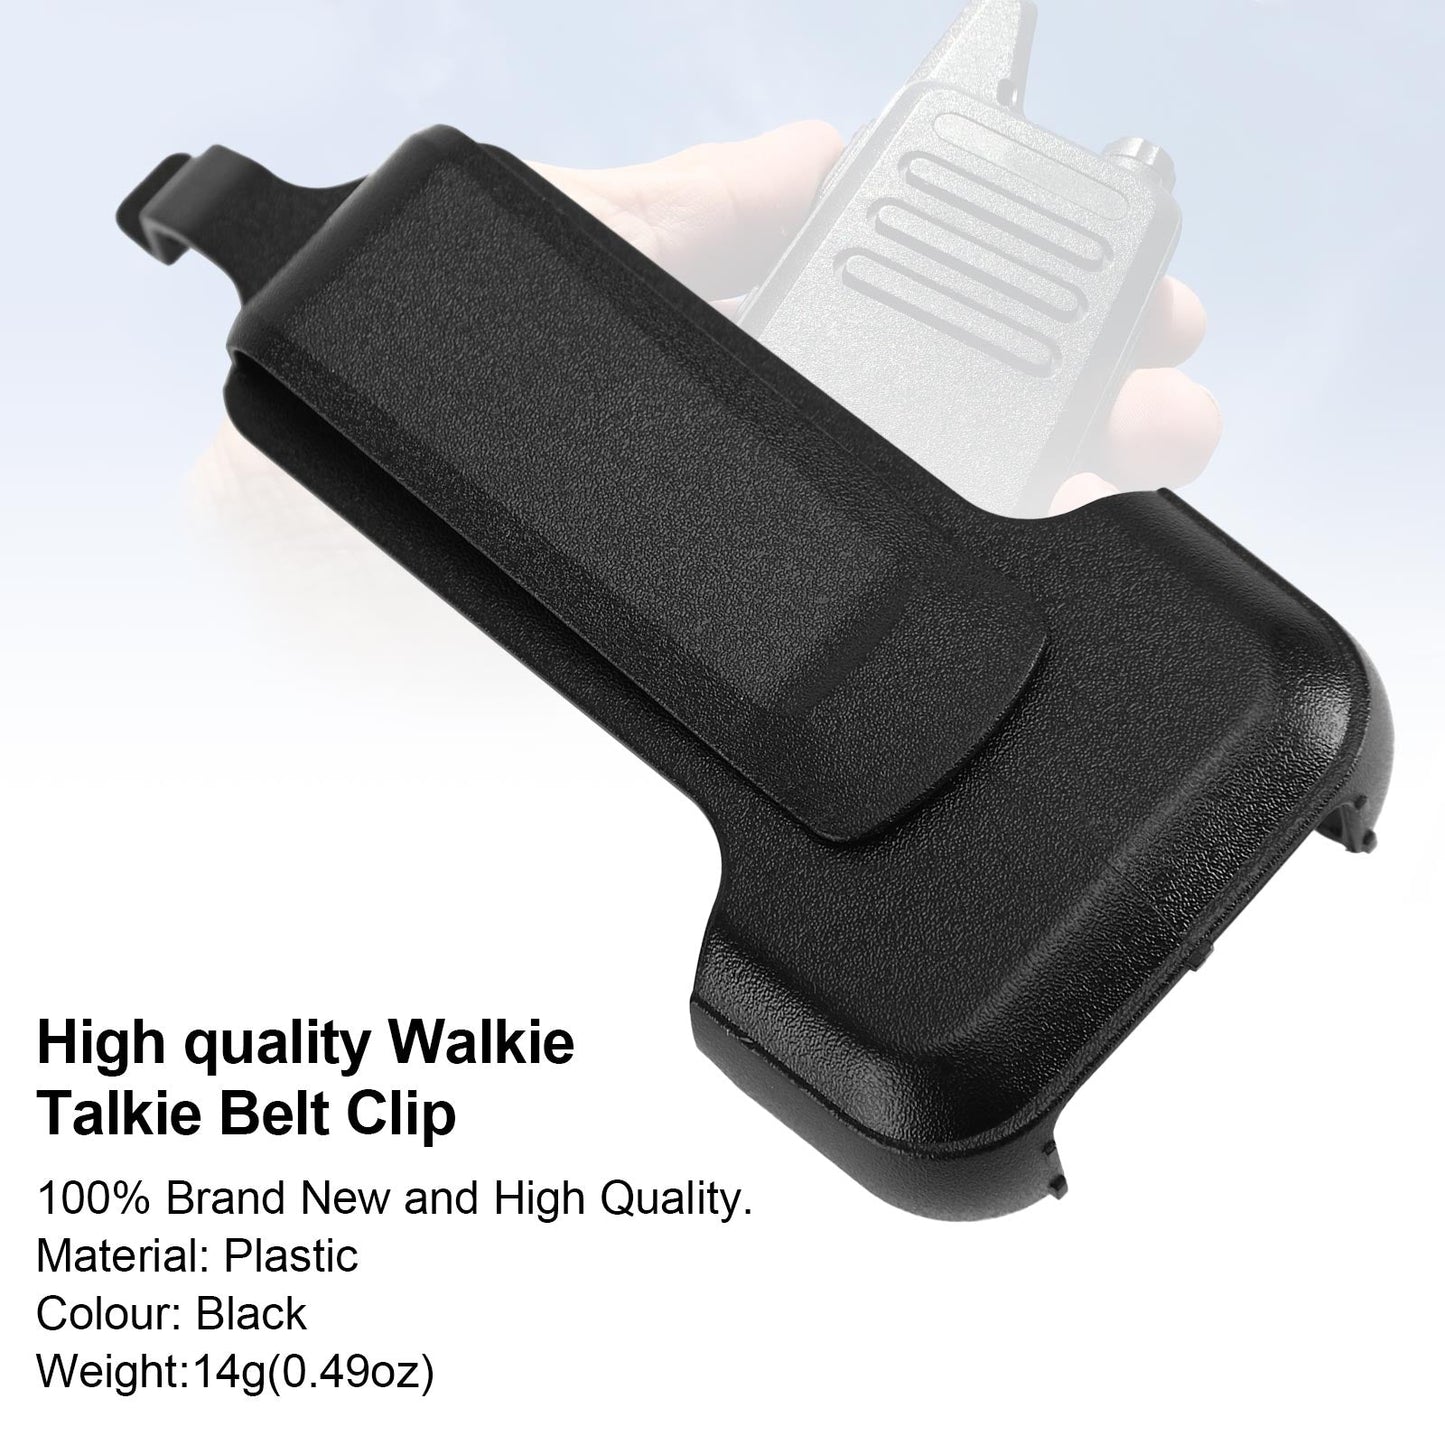 1x/5x ZS-B1 clip de poche arrière Clip de ceinture adapté pour KD C1/C2 RT22 RT622 talkie-walkie